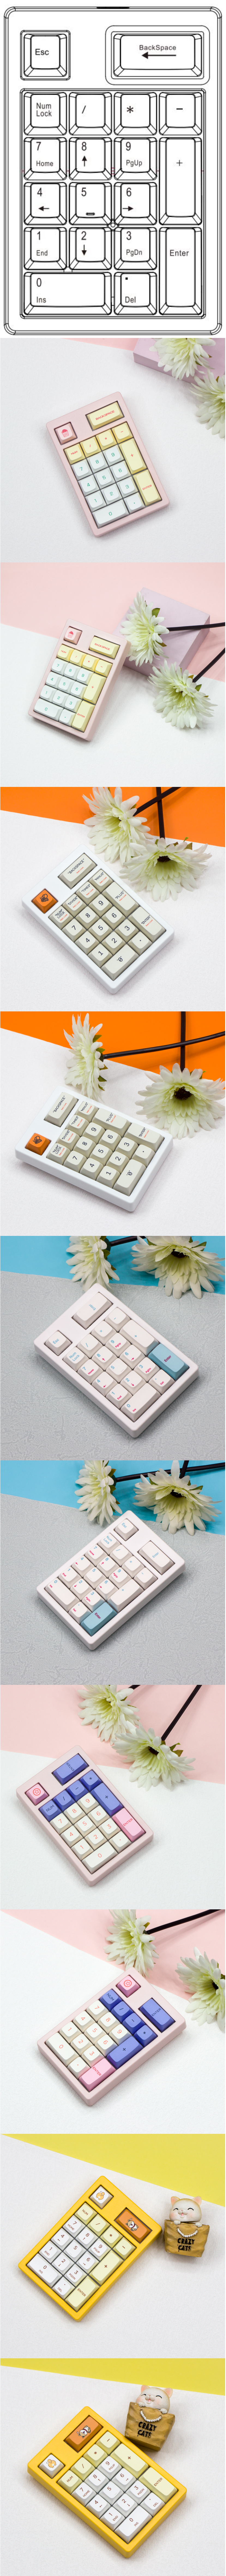 Fancy NT Pad Keyboard Kit